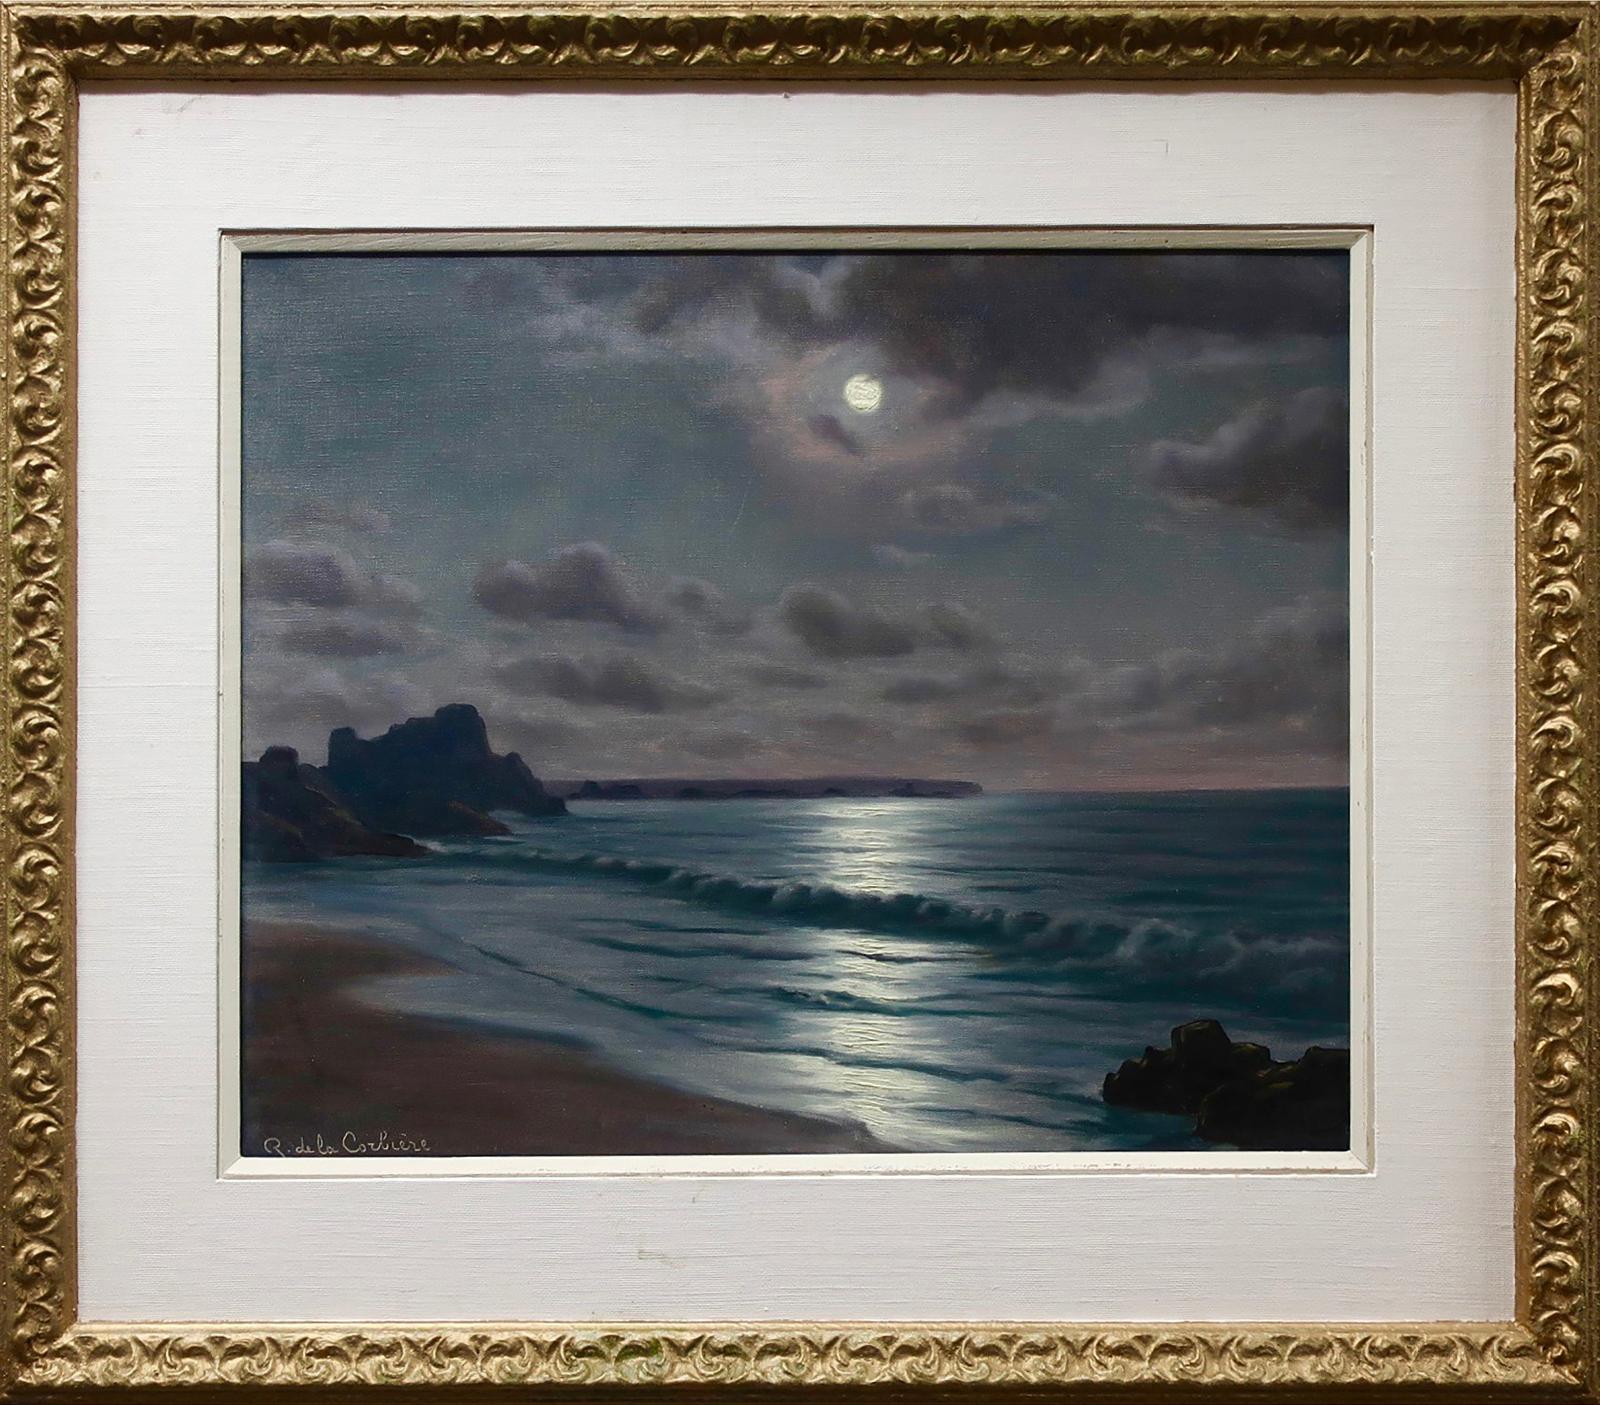 Roger de la Corbiere (1893-1974) - Moonlit Seascape